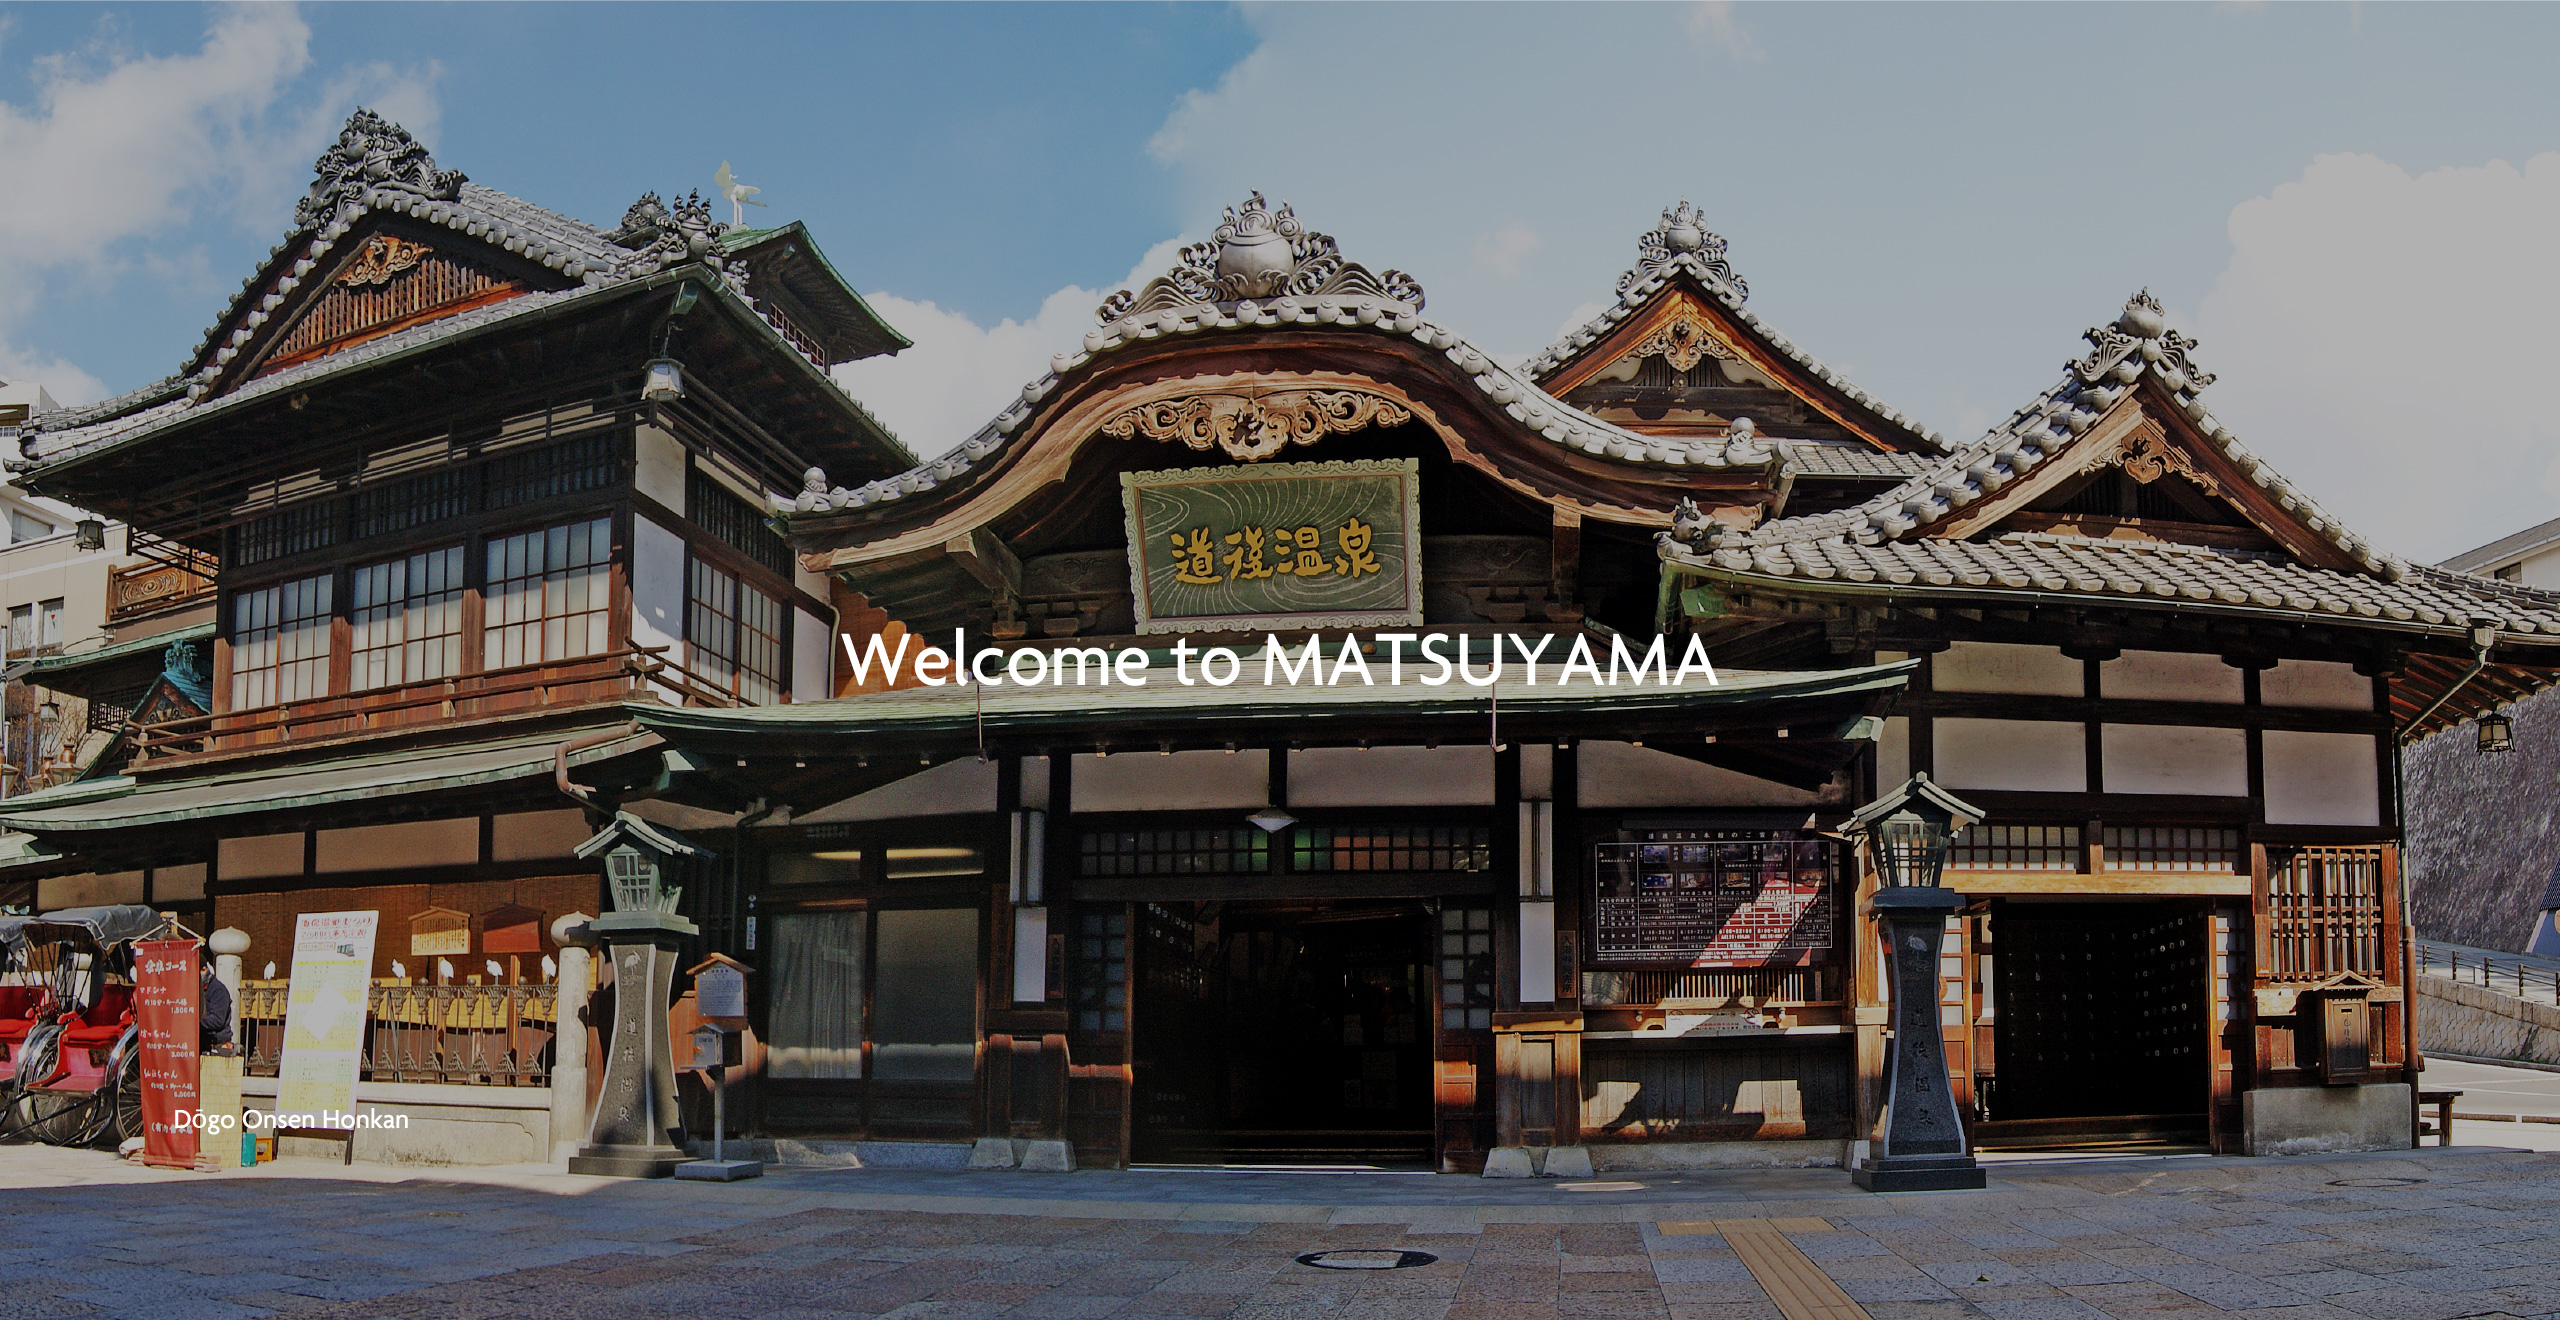 道後温泉 | Welcome to MATSUYAMA